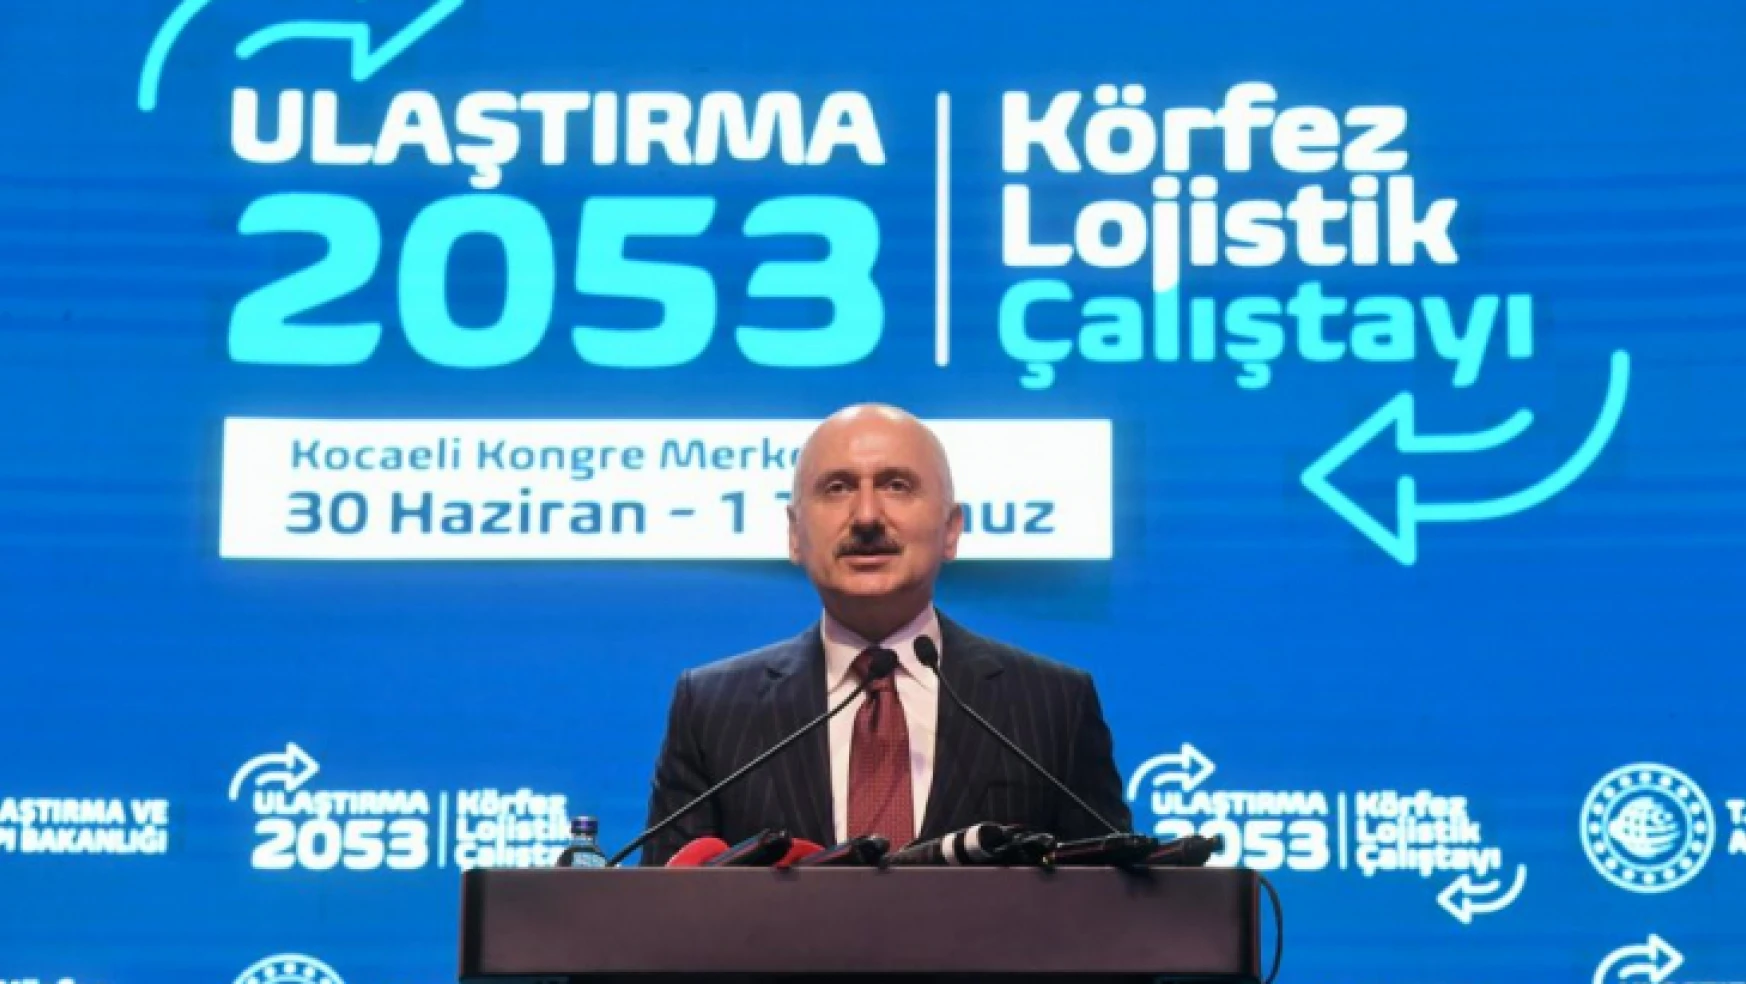 Bakan Karaismailoğlu, Kocaeli'de düzenlenen Ulaştırma 2053 Körfez Lojistik Çalıştayı'na katıldı